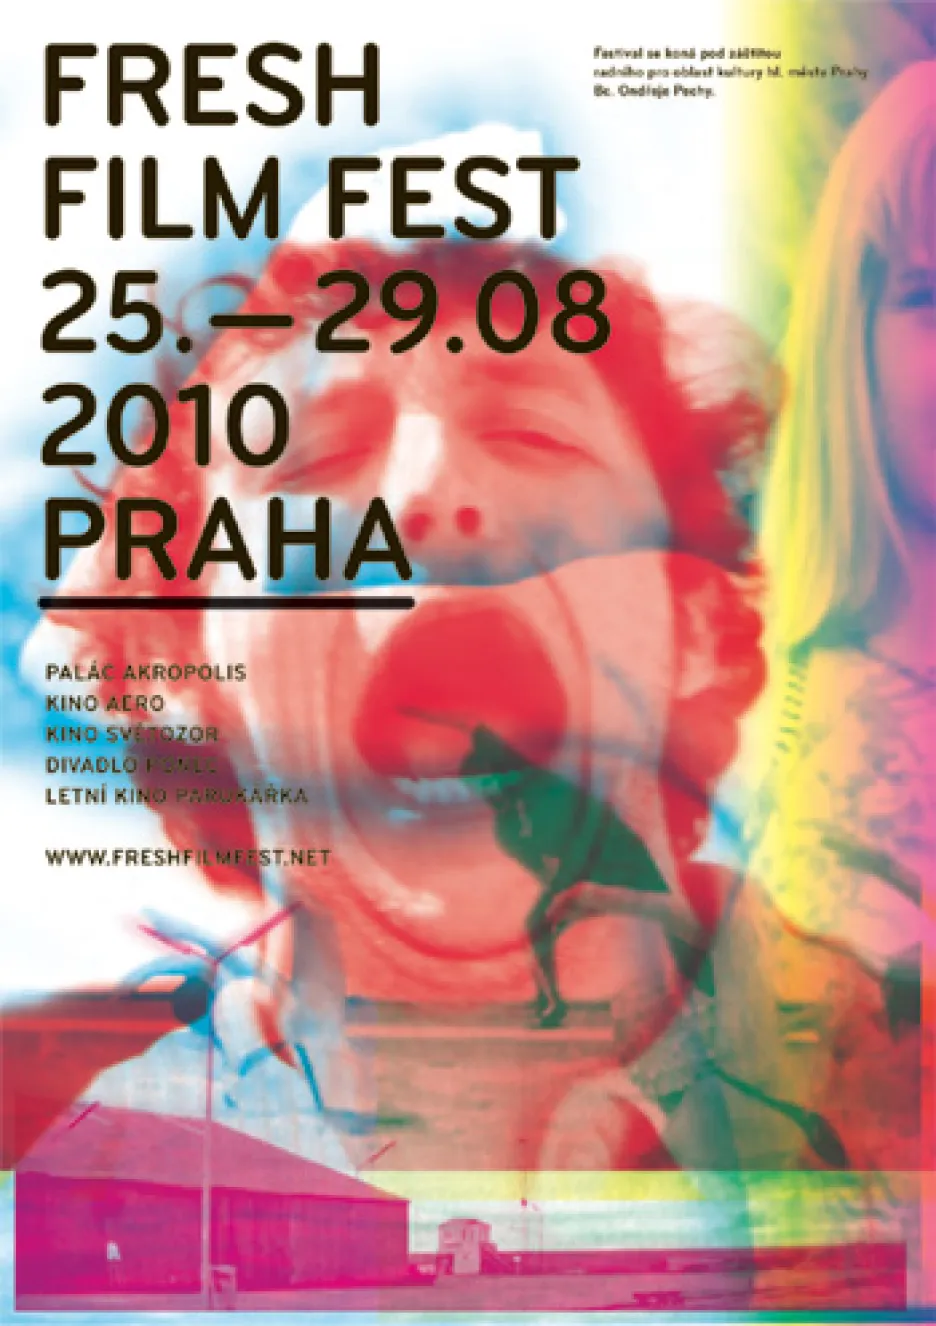 Fresh Film Fest 2010